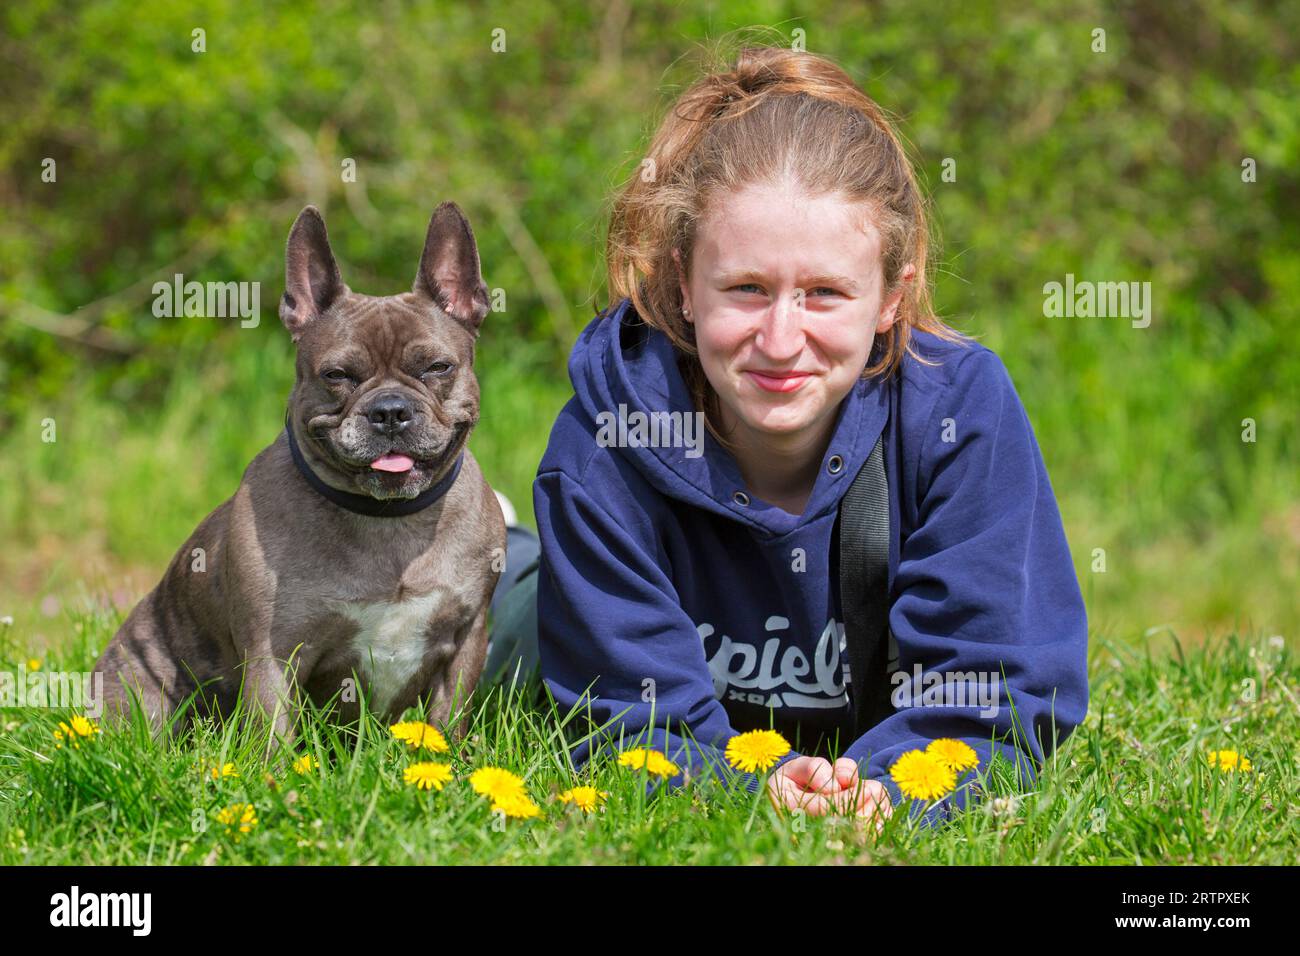 Fille posant avec le bulldog français Lilas / Isabella frenchie / Bouledogue Français, race de chien de compagnie français ou chien jouet dans le jardin Banque D'Images